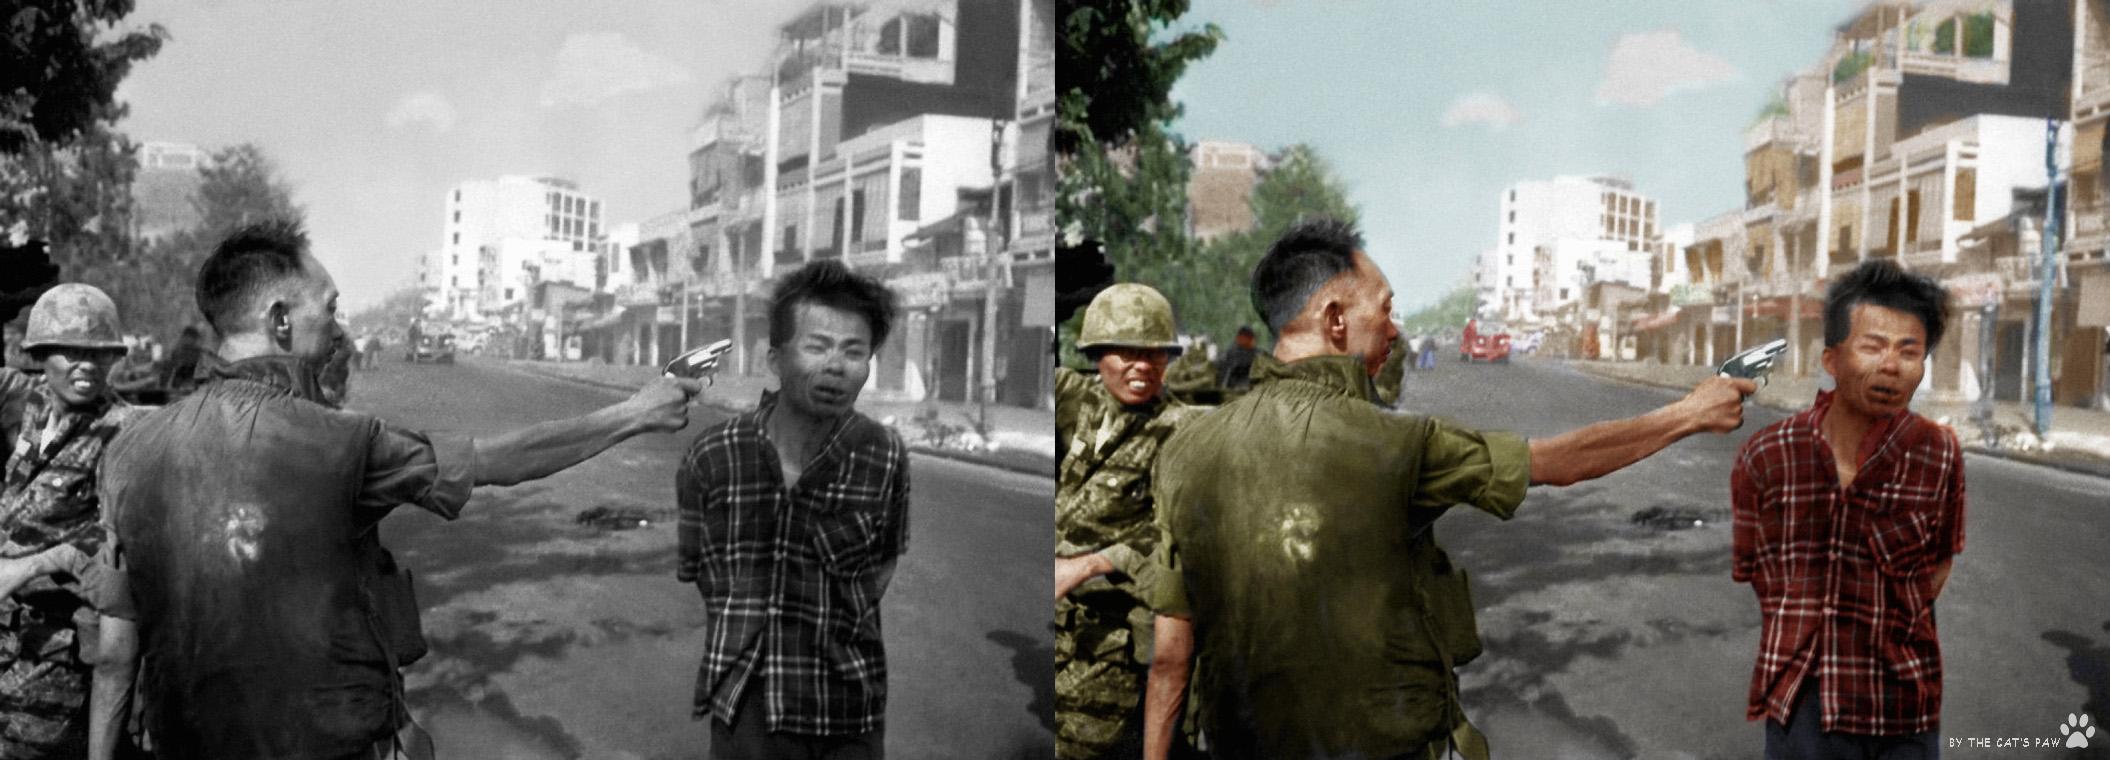 Eddie adams vietnam war